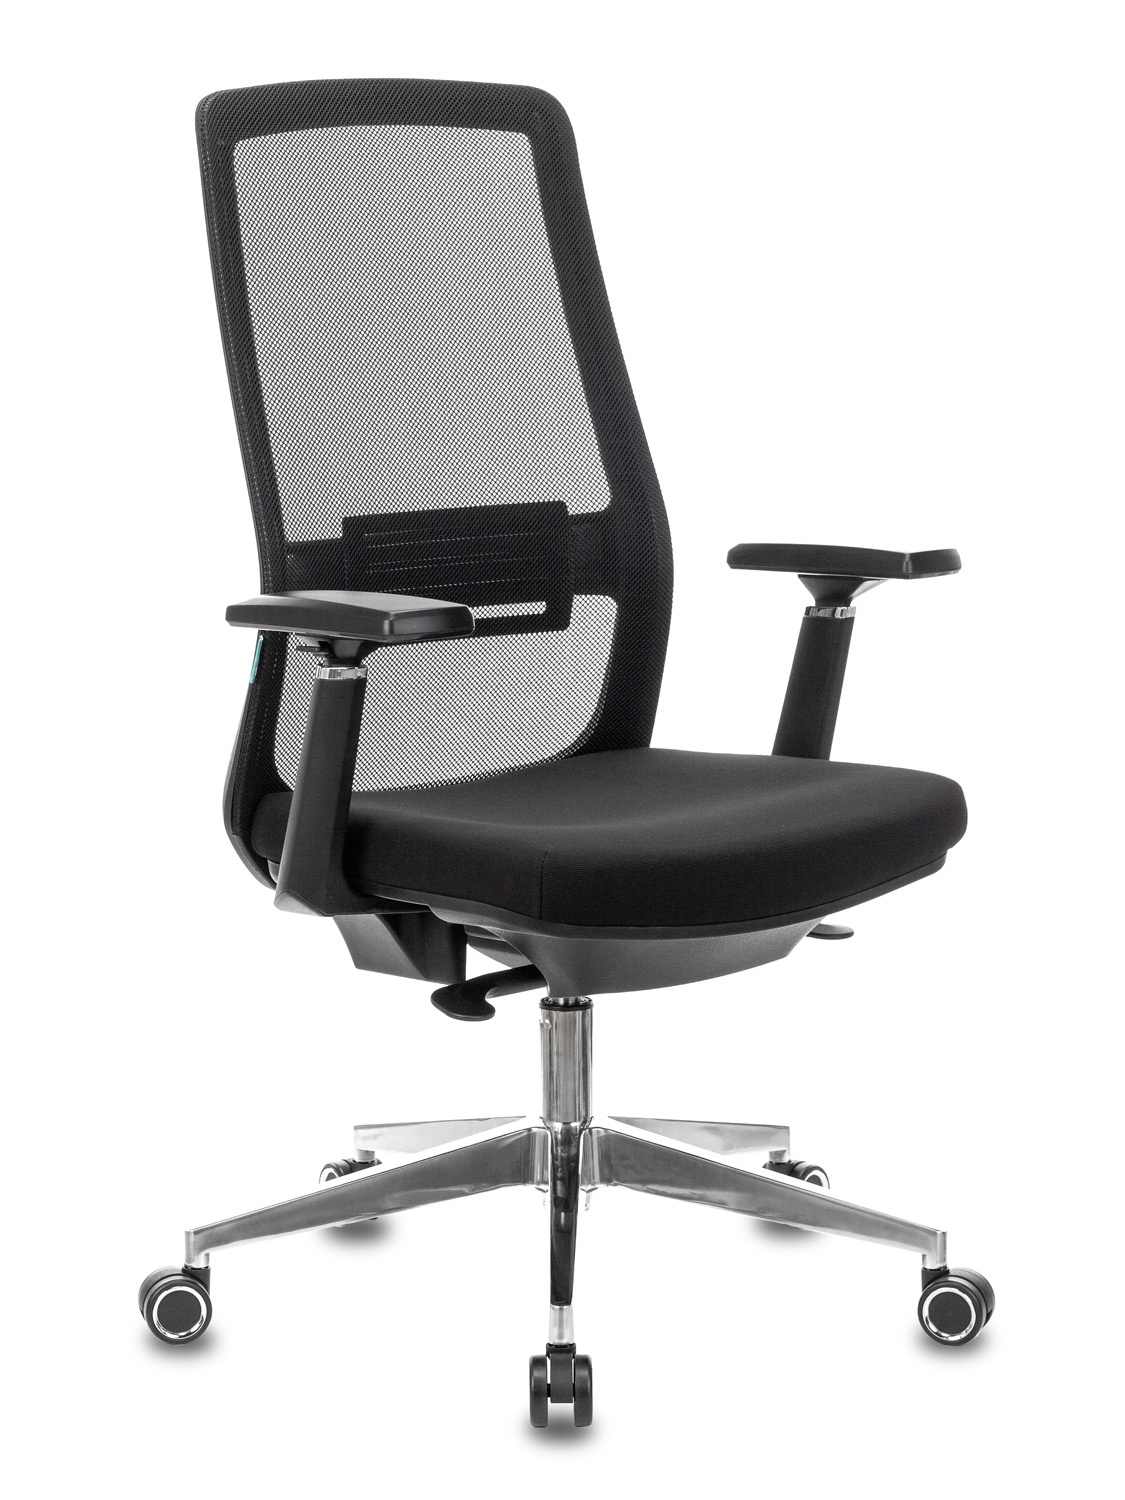 Кресло руководителя Бюрократ MC-915 черный TW-01 26-B01 сетка/ткань крестовина алюминий MC-915/B/26-B01